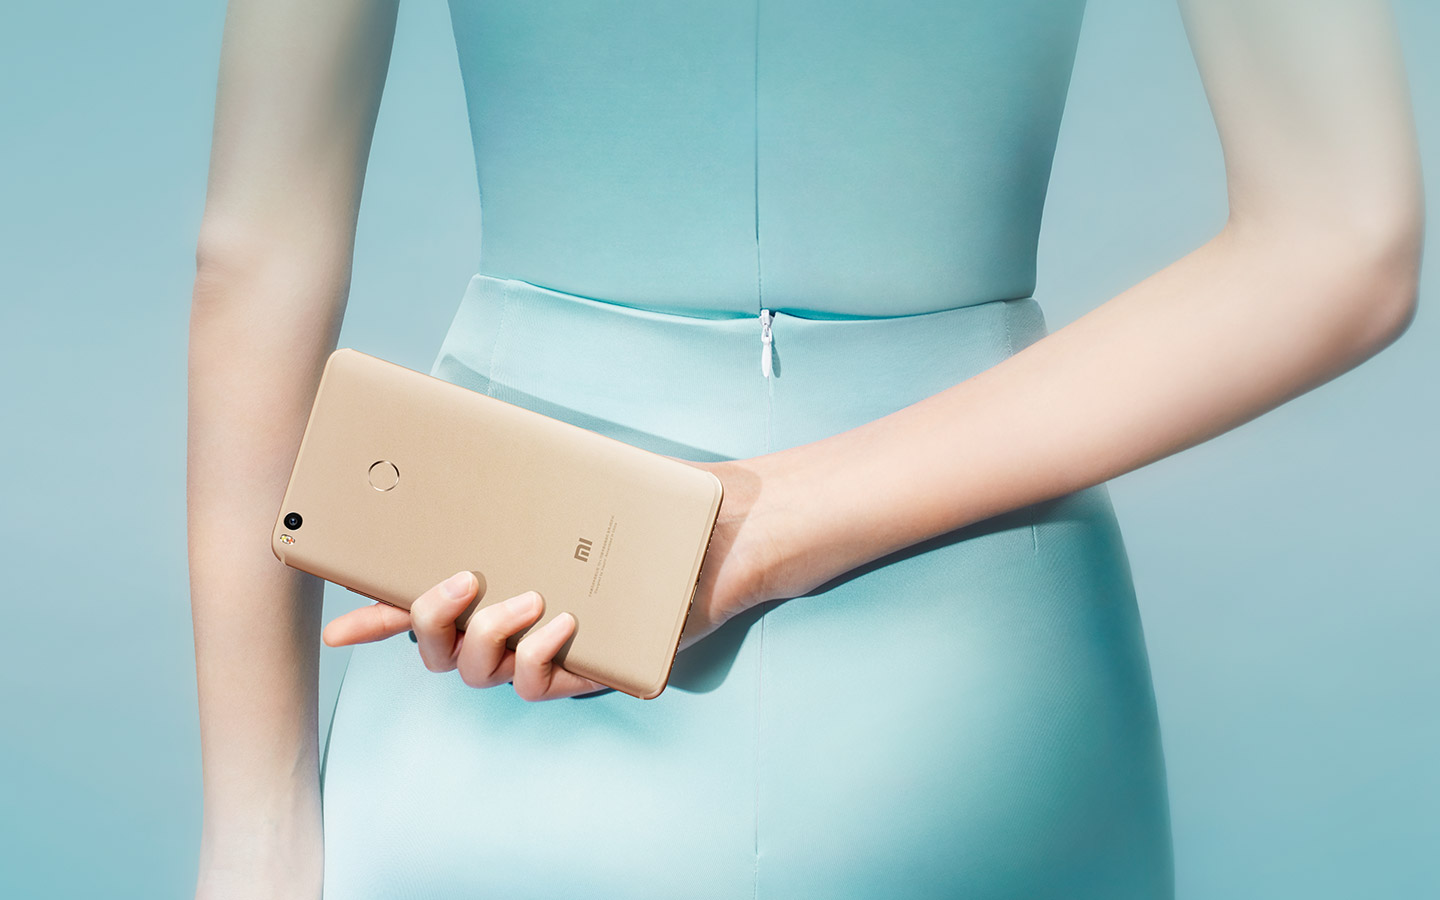 Imagen publicitaria del Xiaomi Mi Max 2 dorado.